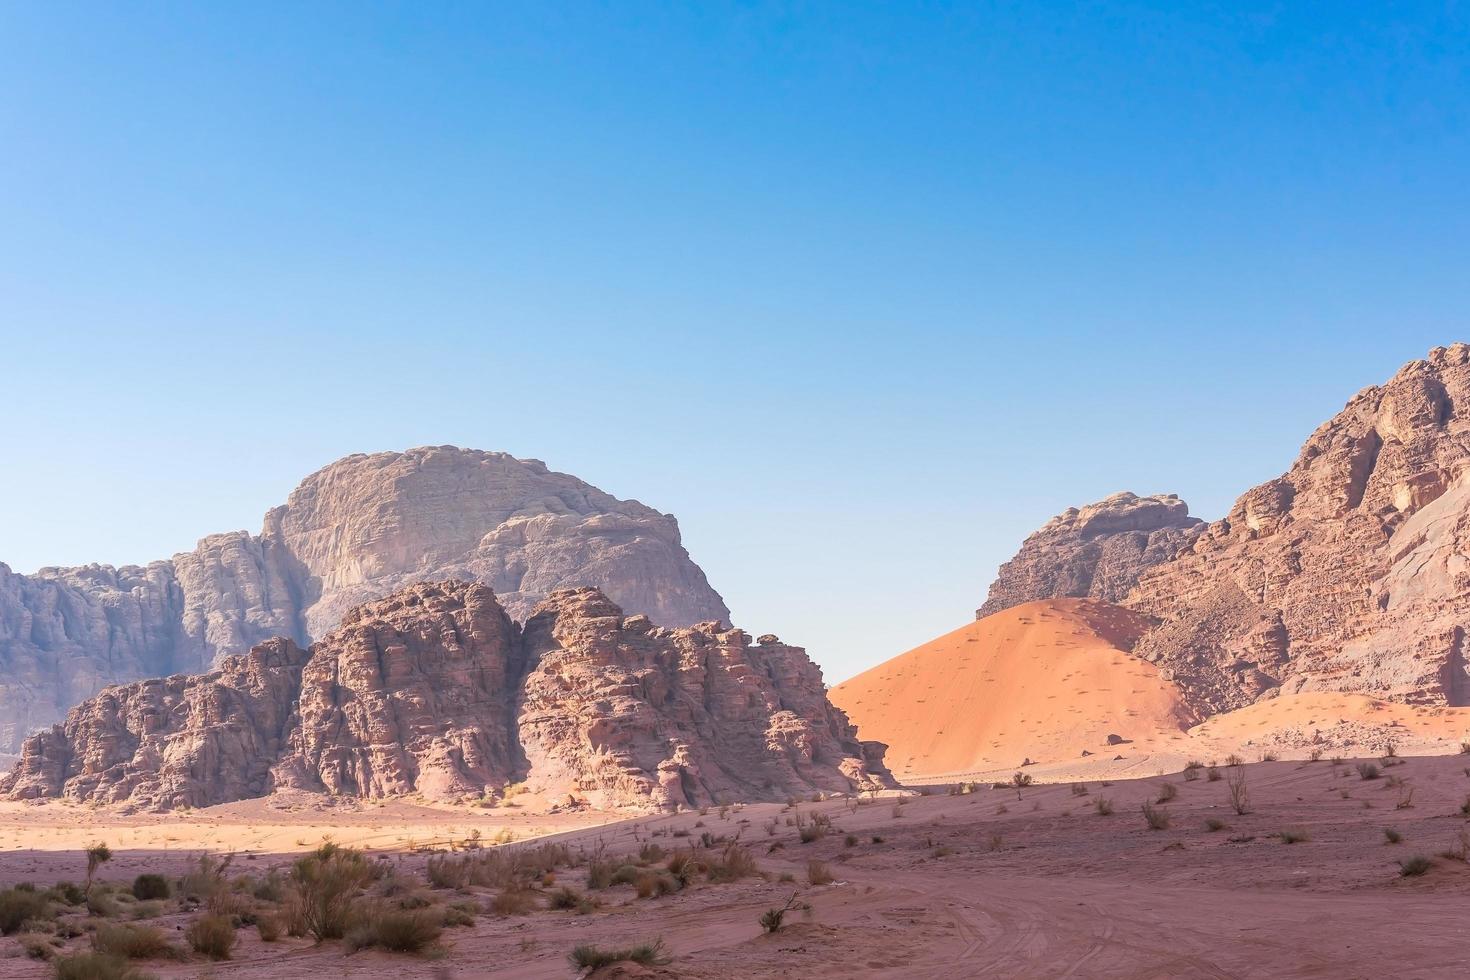 Montagnes rouges du désert de Wadi Rum en Jordanie photo